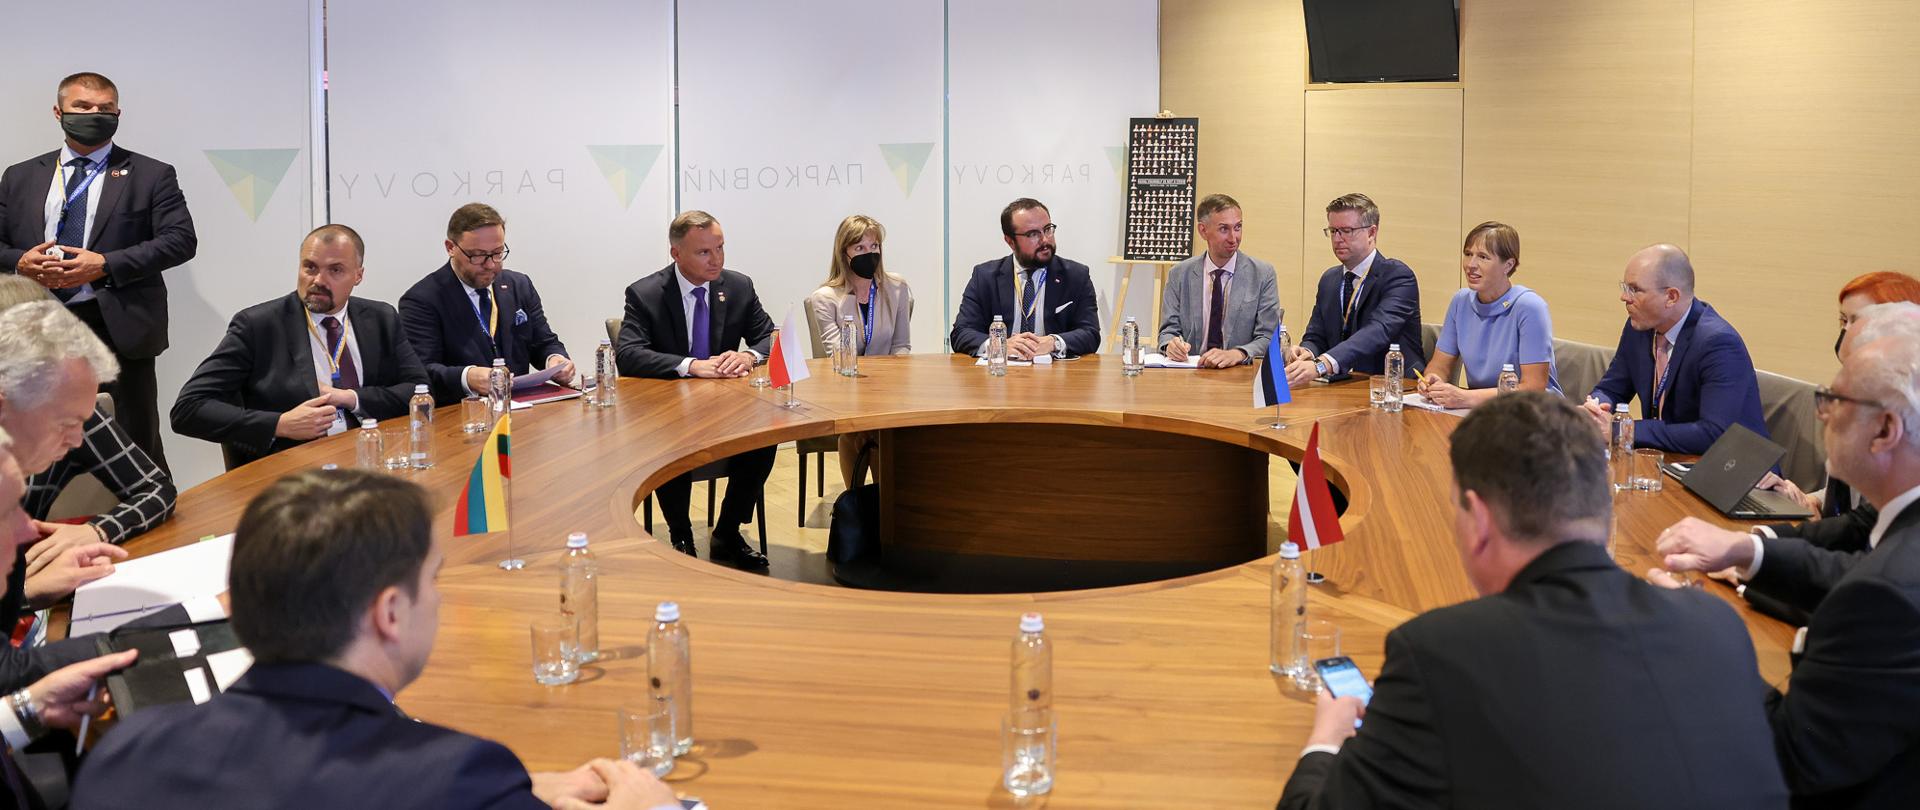 Kijów | Spotkanie Prezydentów Polski, Estonii, Łotwy i Litwy